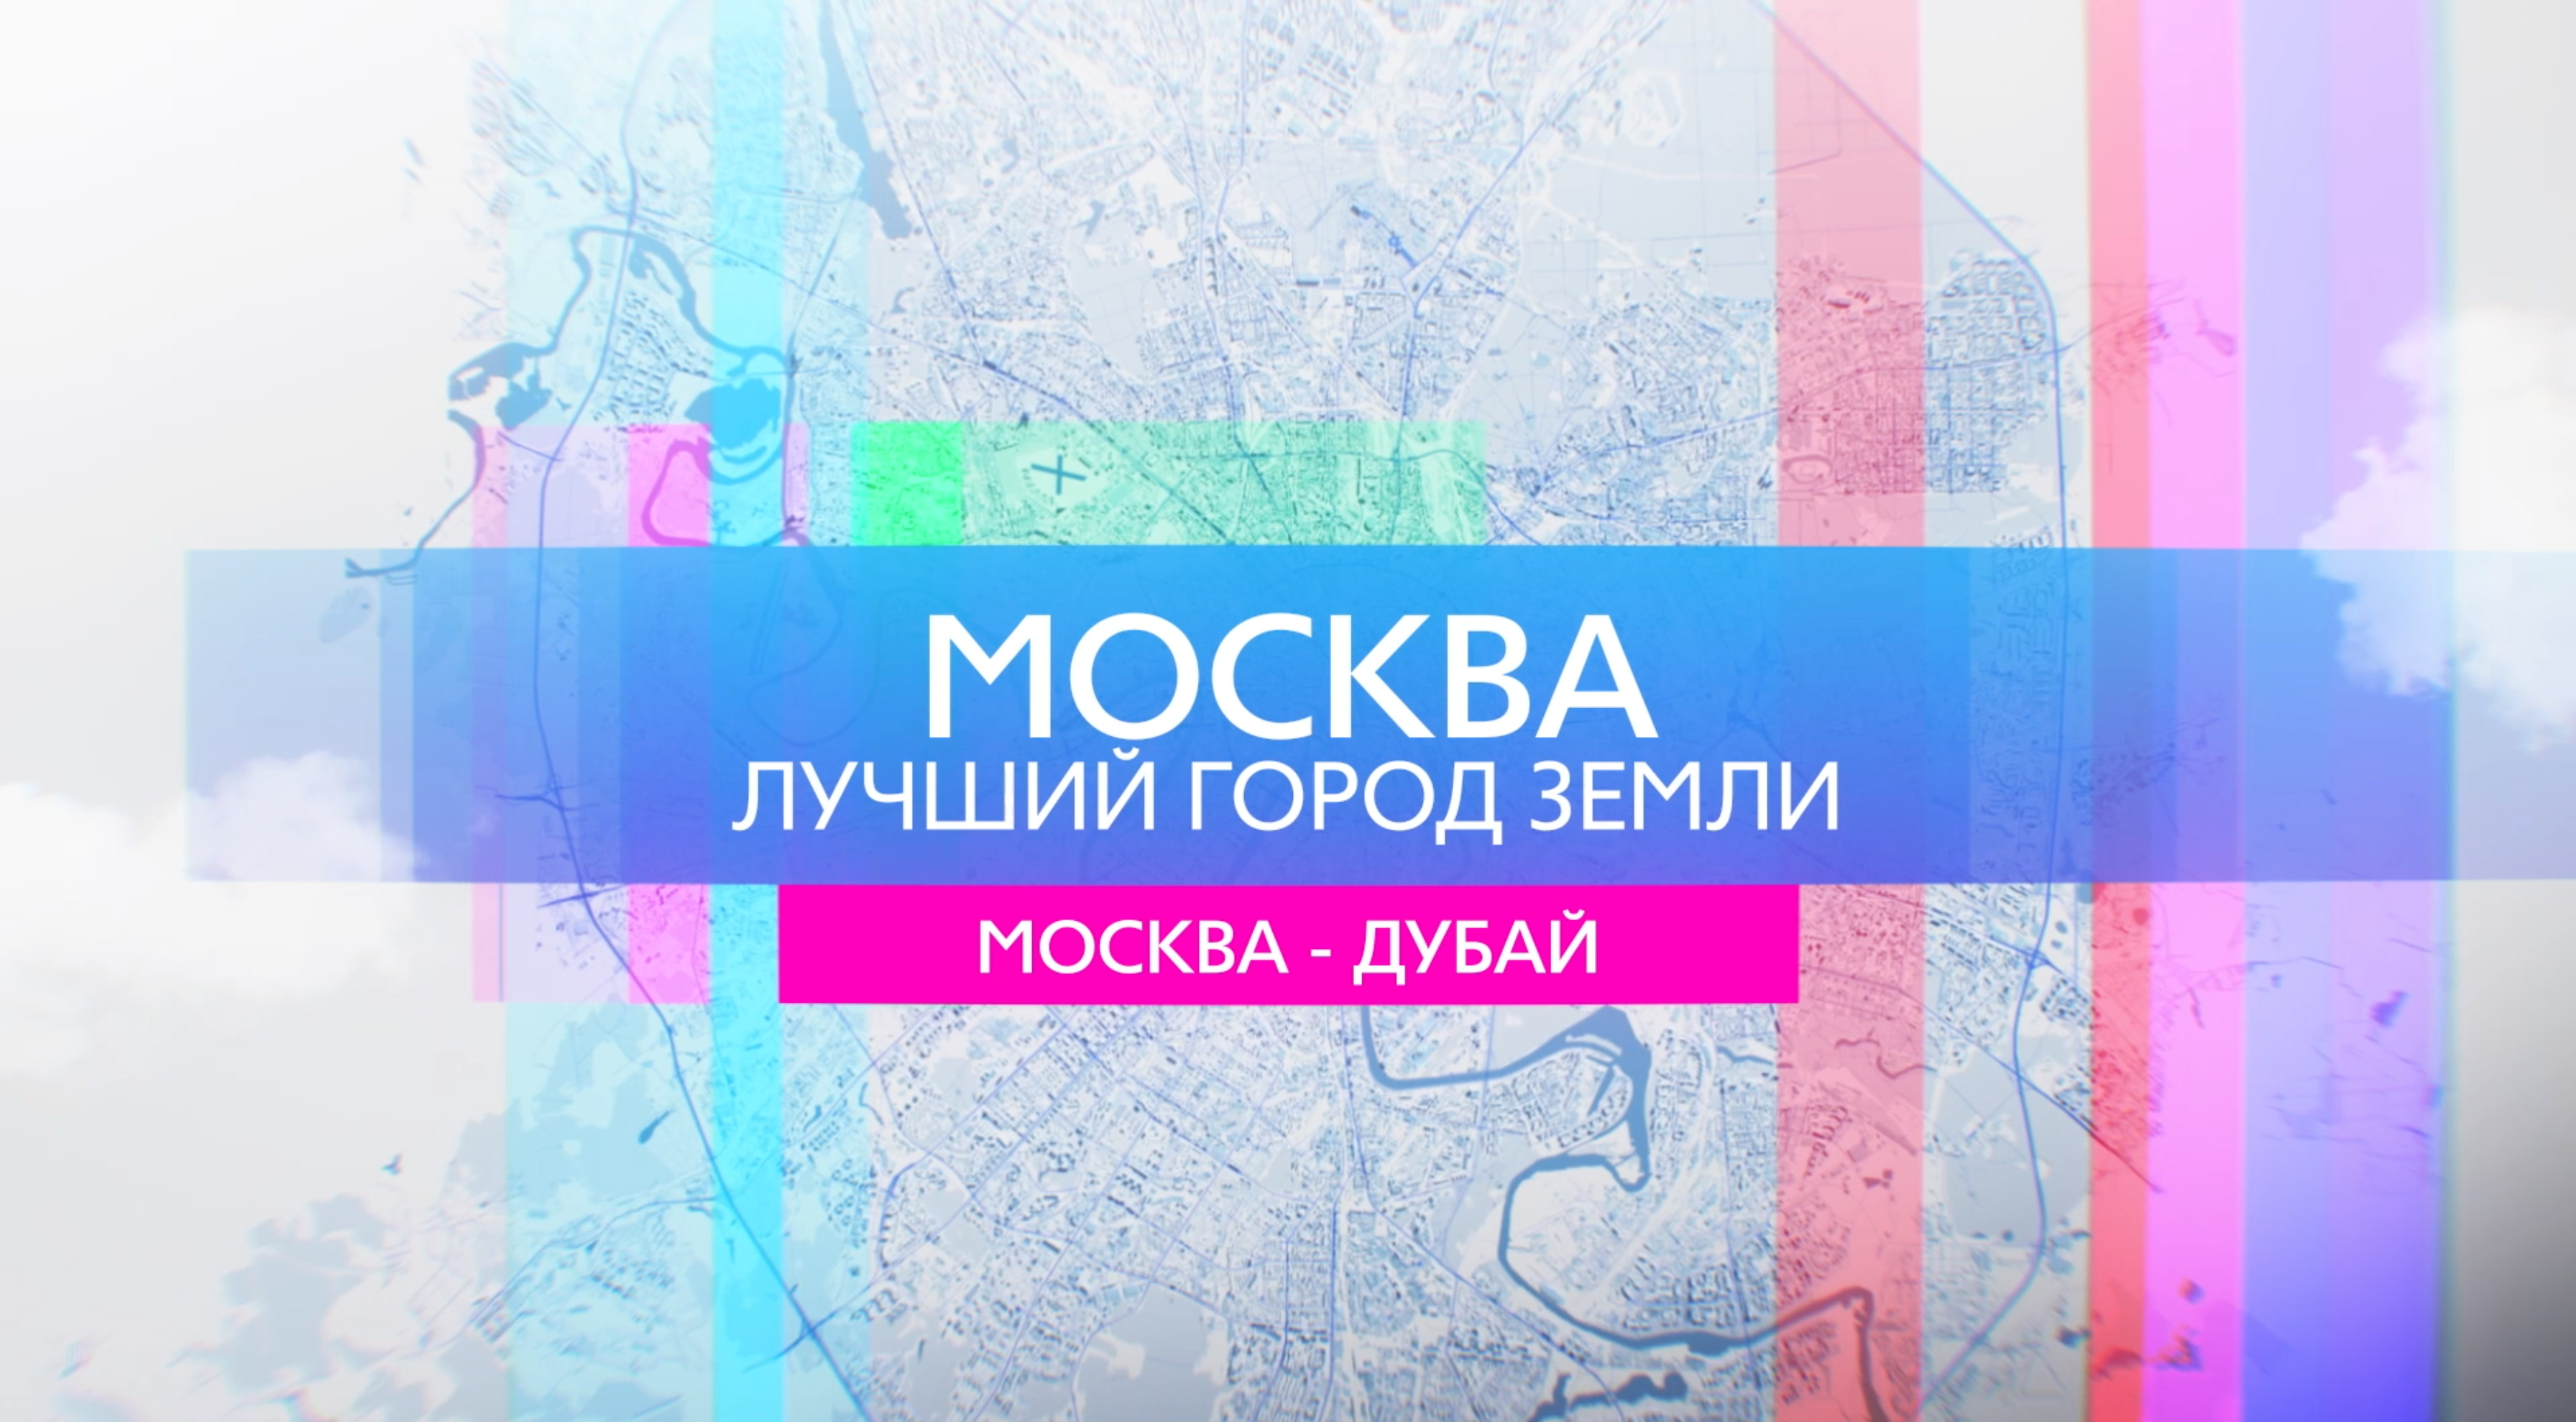 Москва - лучший город Земли -Главная строительная выставка на Ближнем Востоке (Промо)